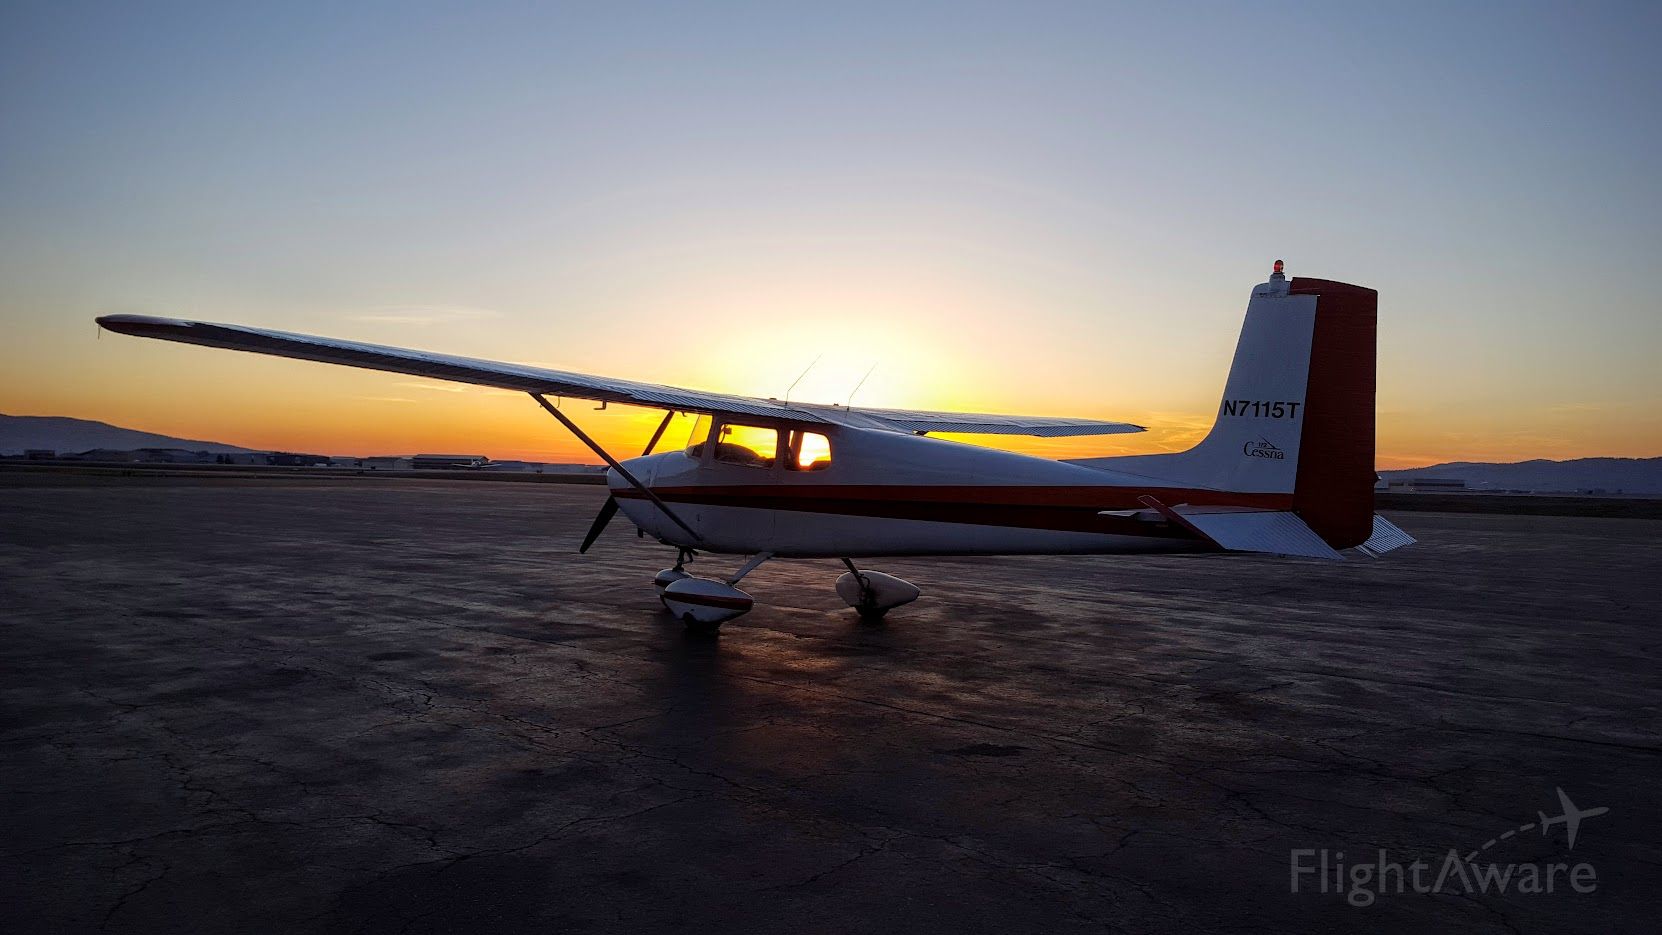 Cessna Skyhawk (N7115T)